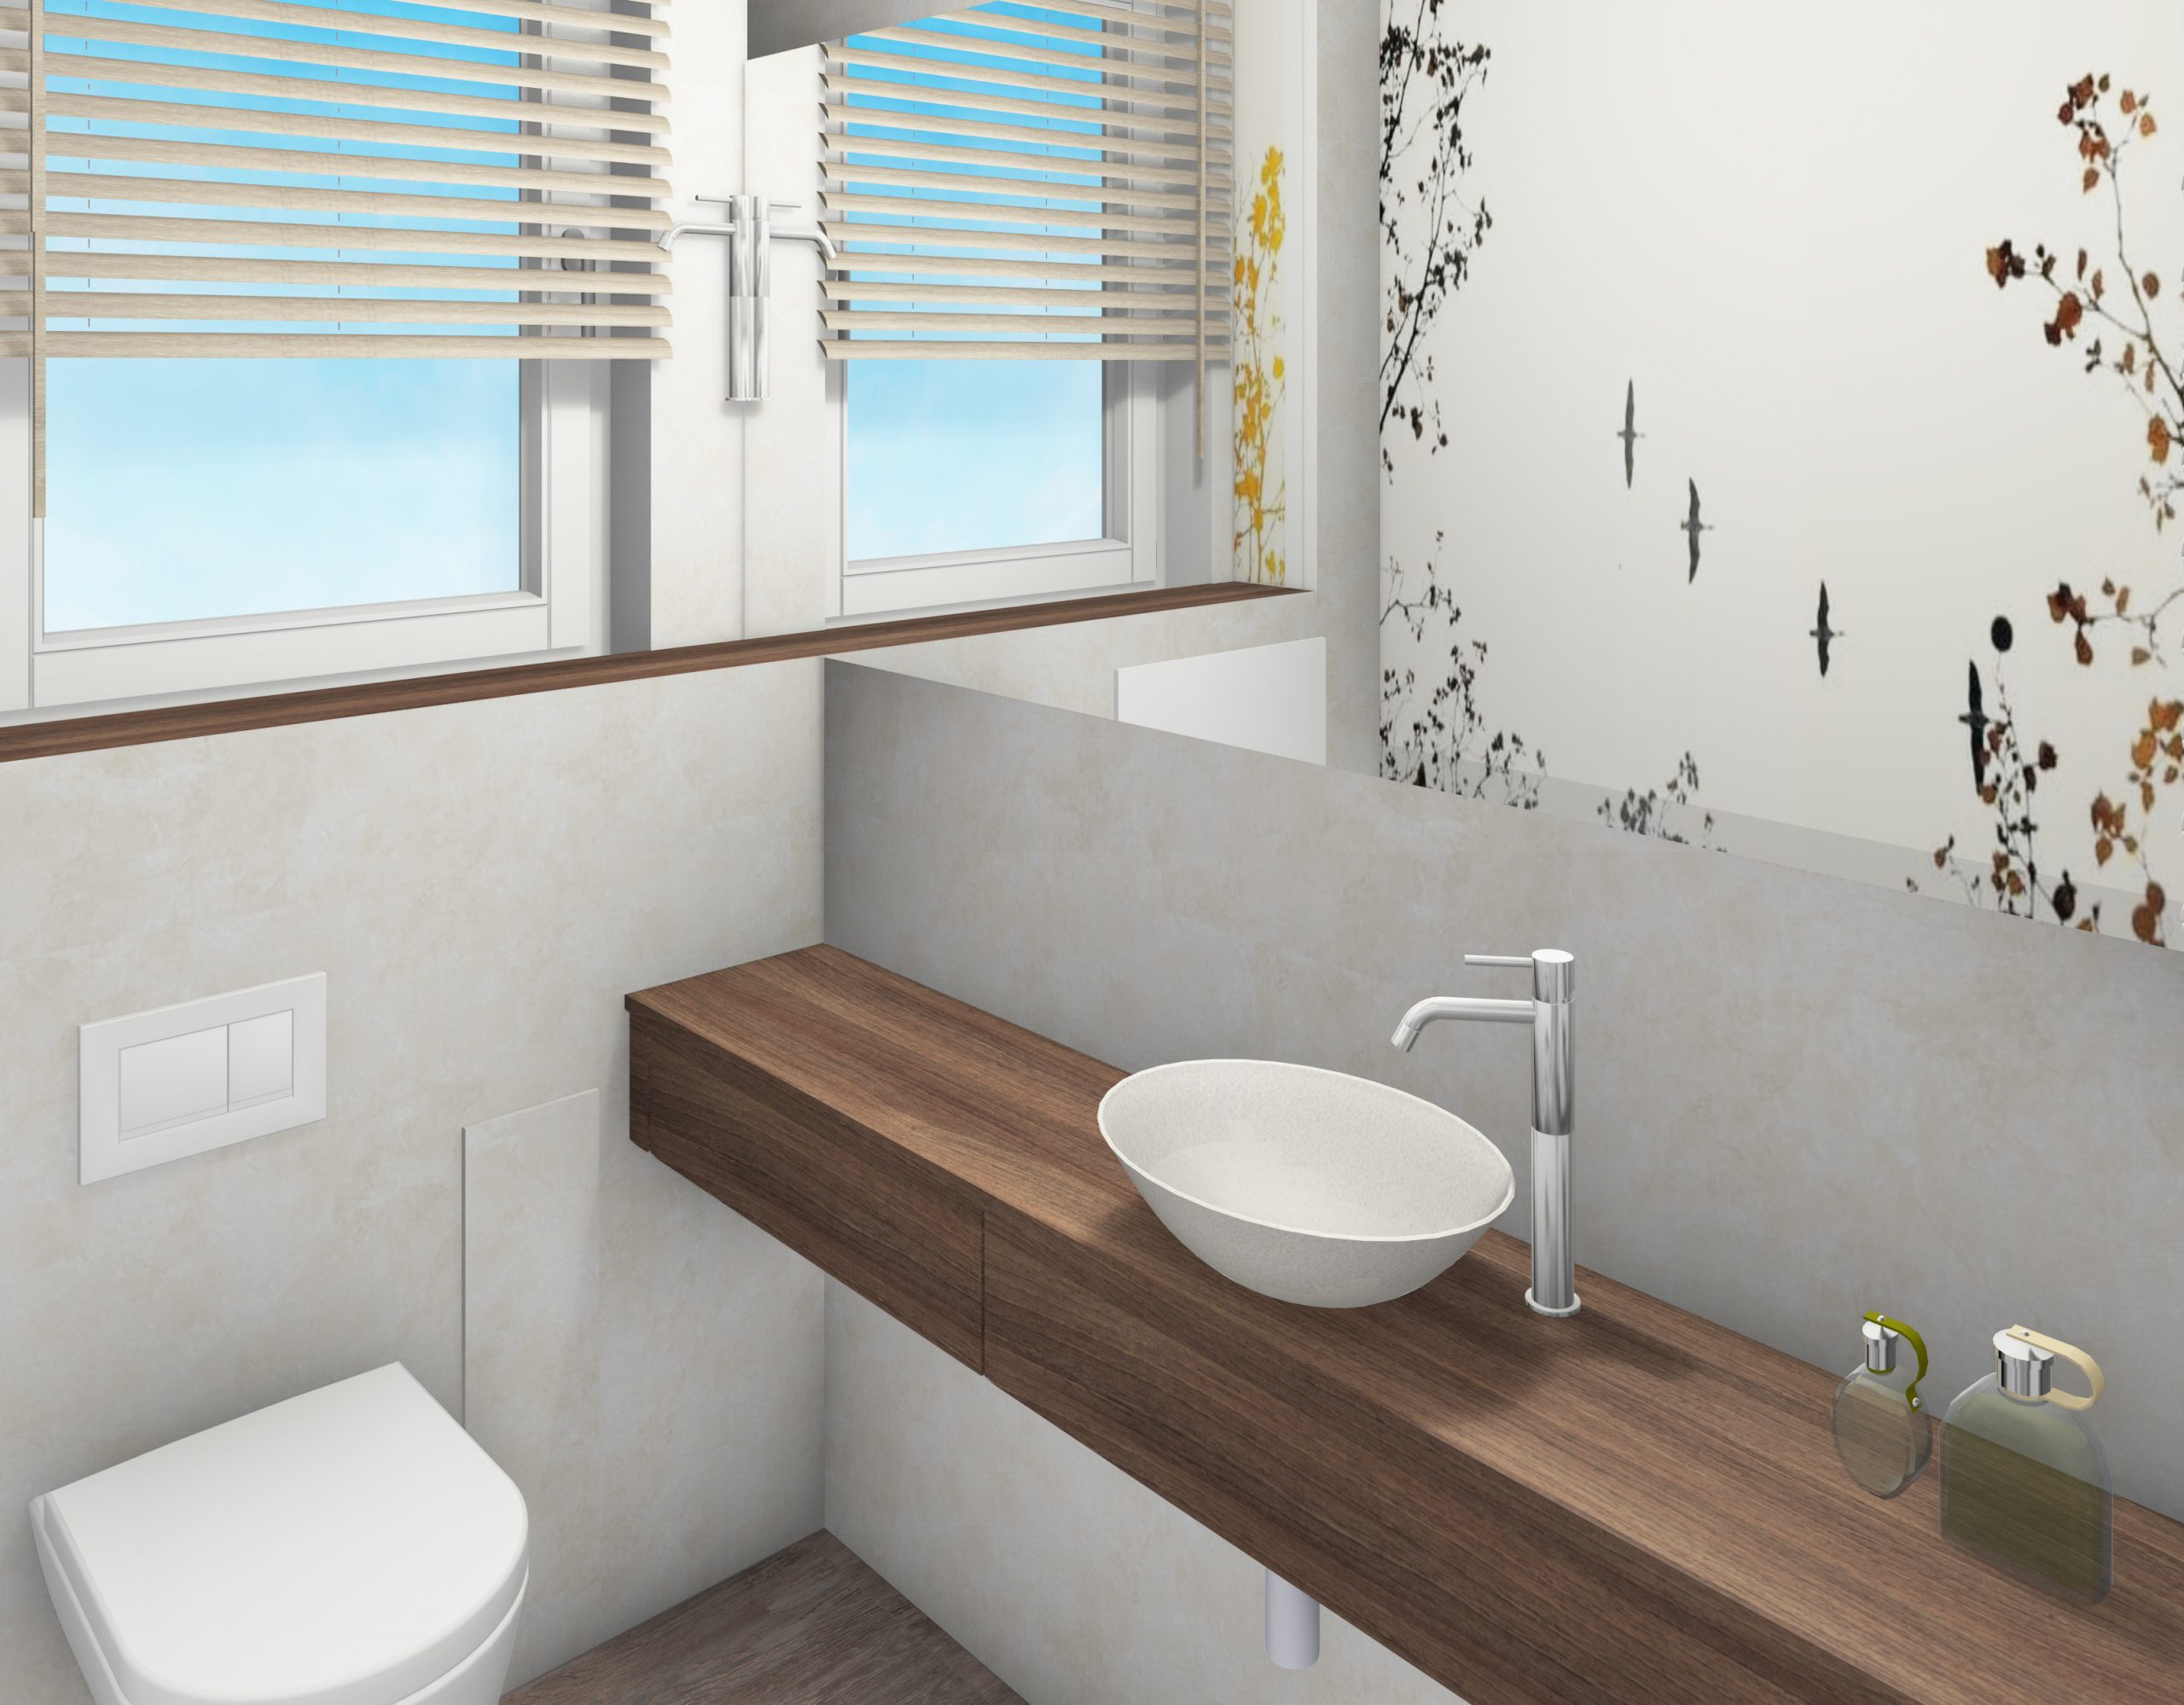 Planung Gäste-WC mit Waschtischanlage von Wand zu Wand, as.designconcepte